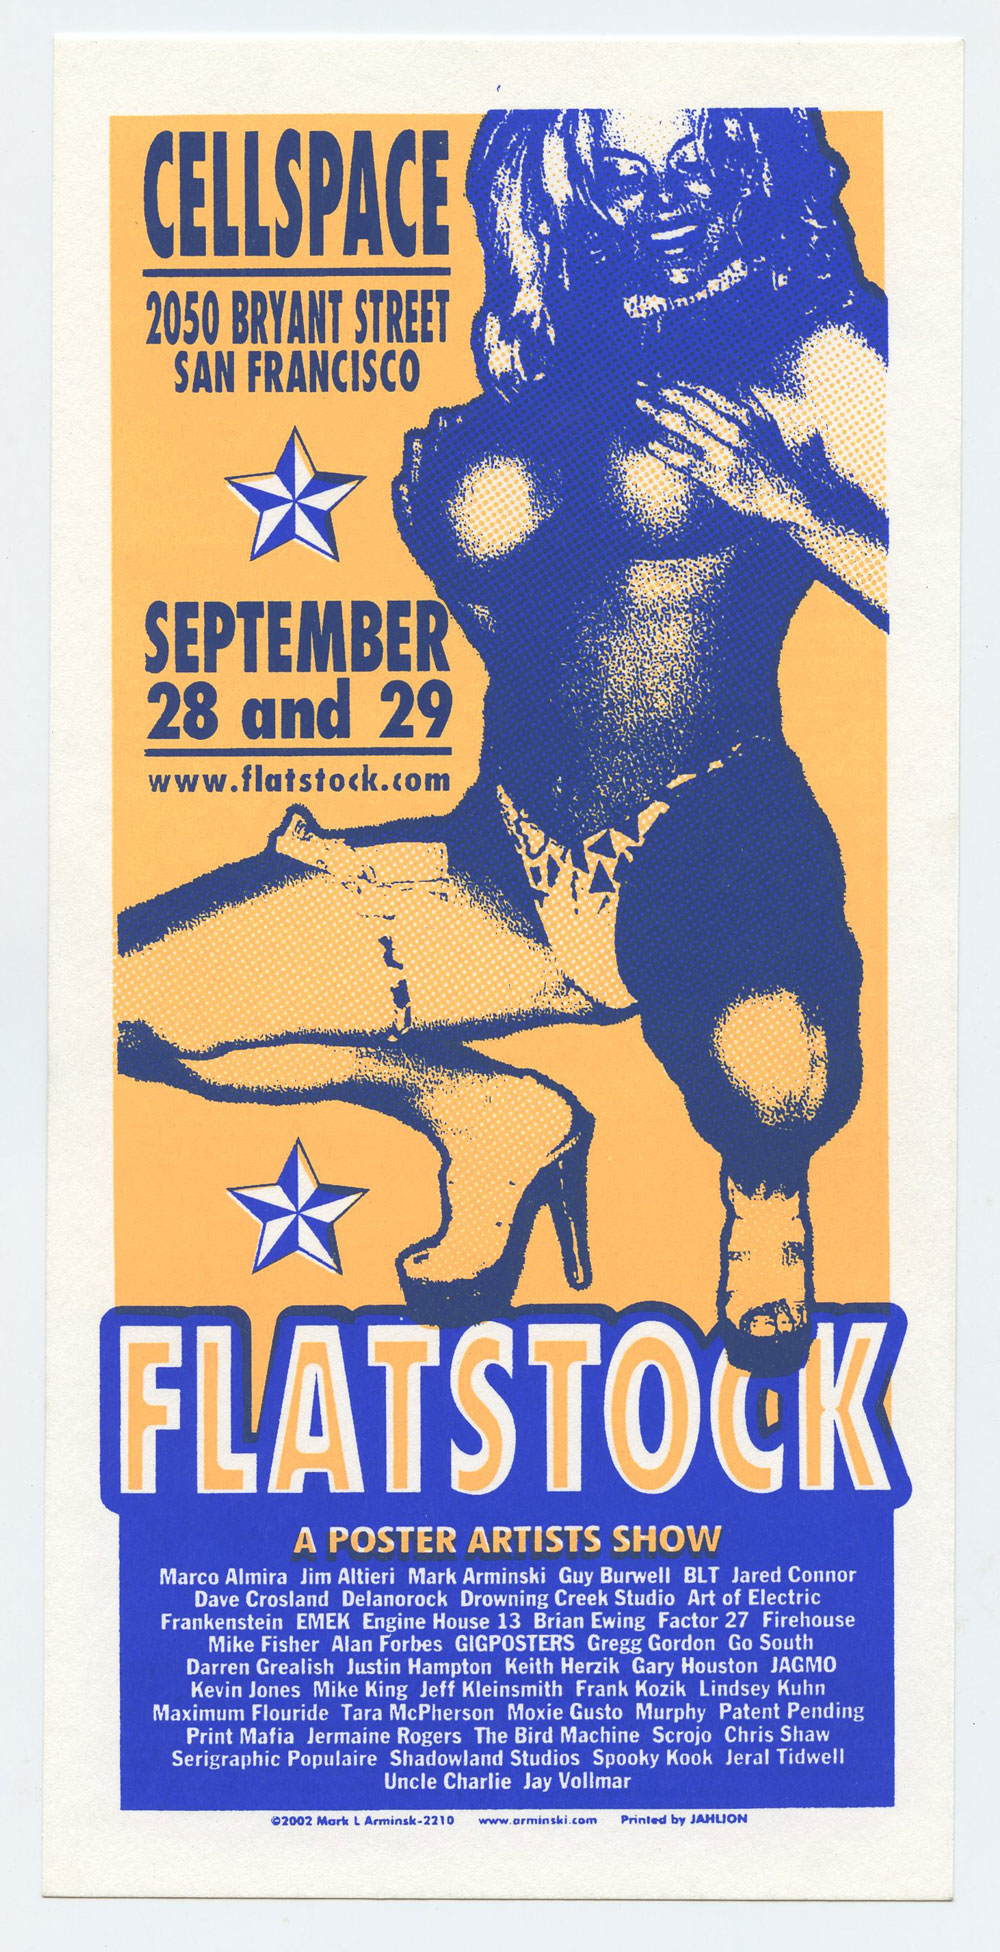 Mark Arminski Handbill Flatstock A Poster Artists Show 2002